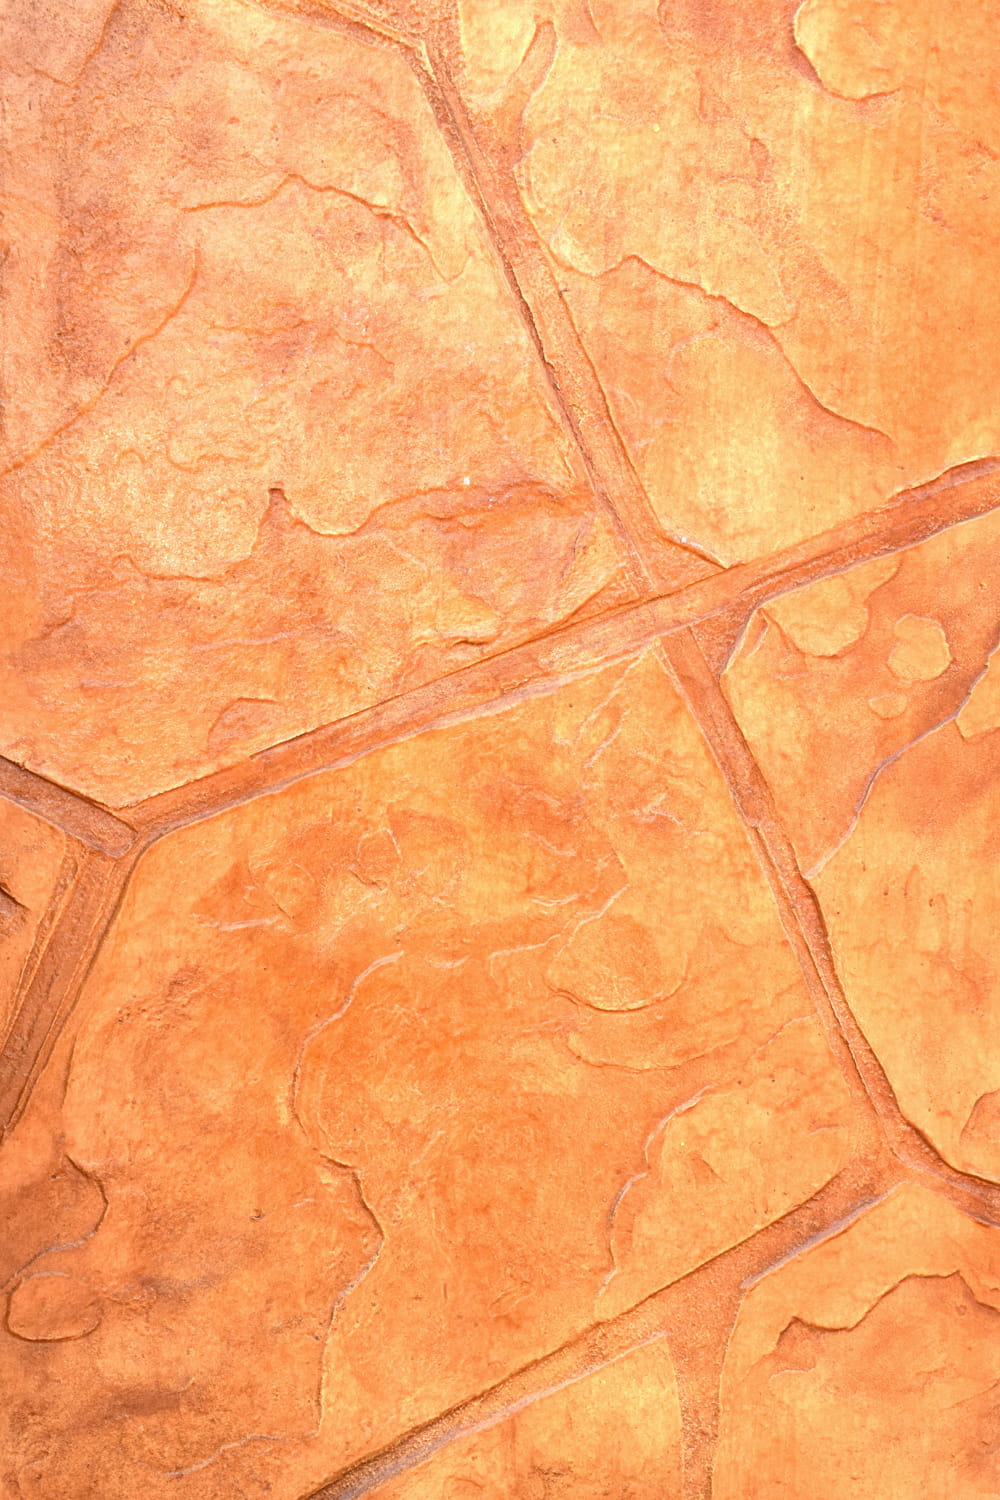 模仿橙色石頭的壓印混凝土鋪面